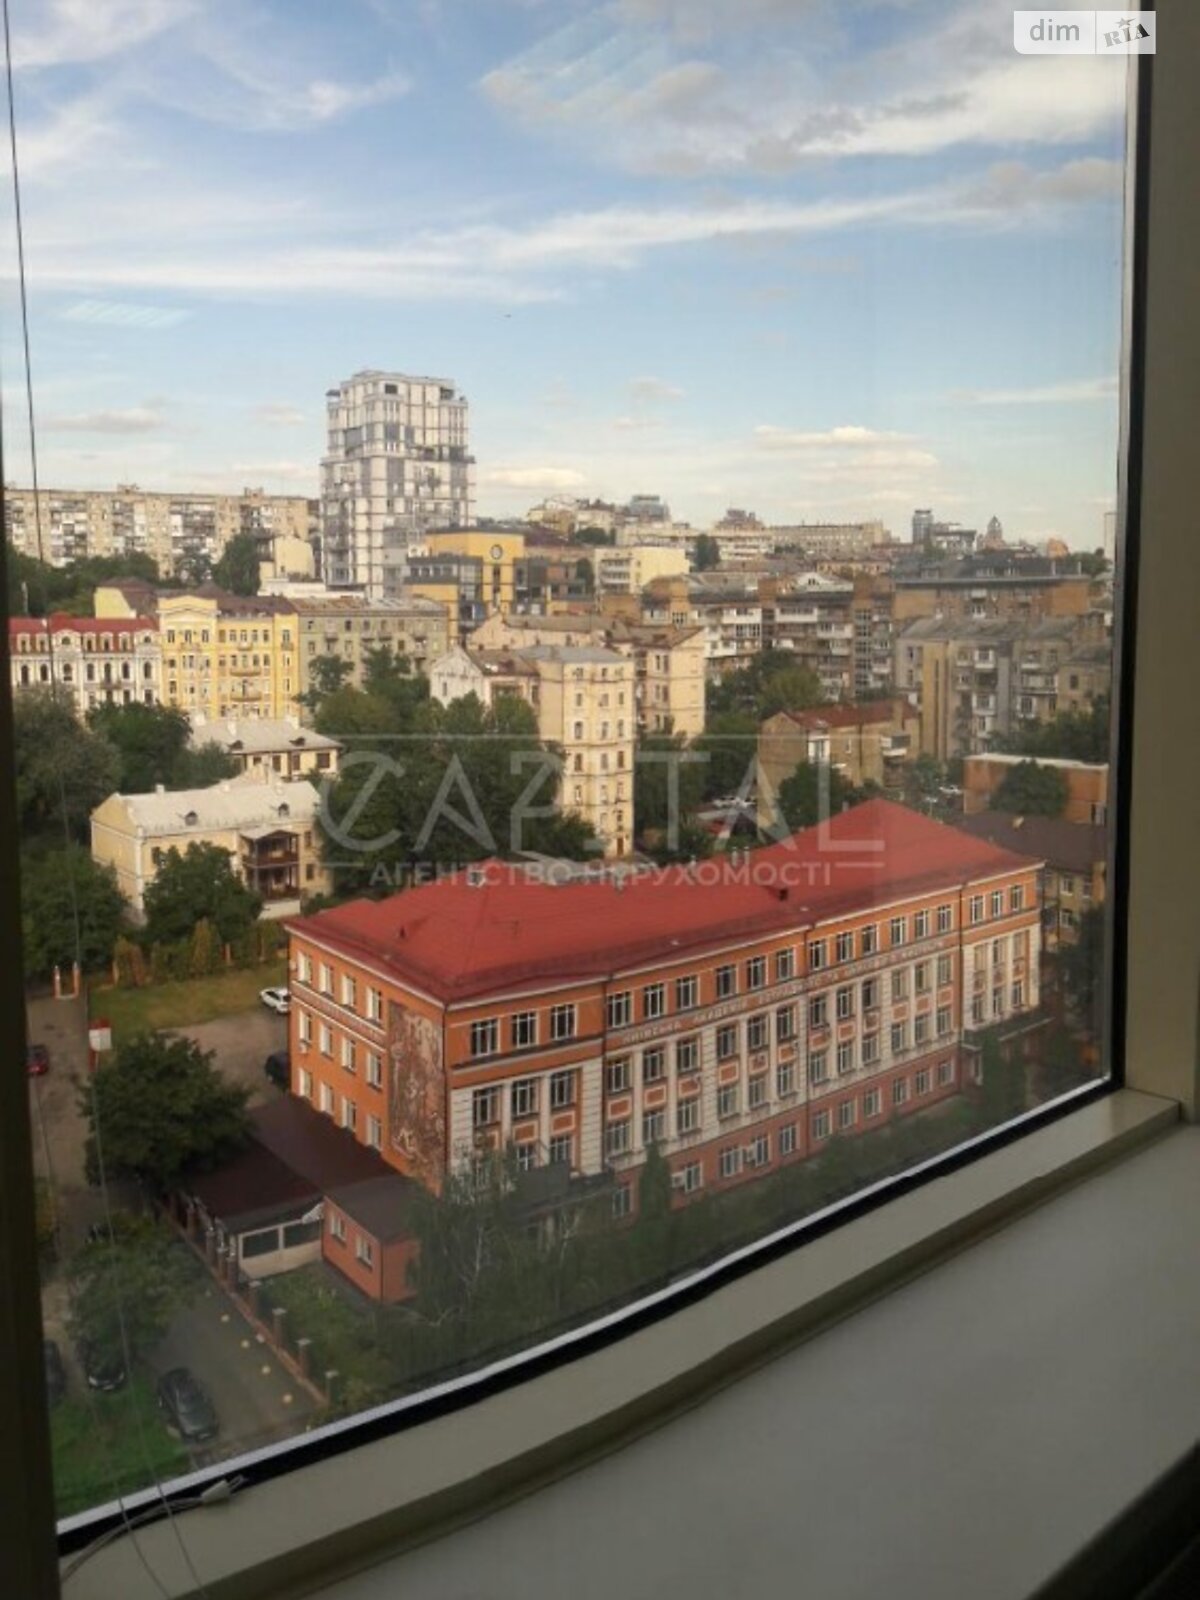 Аренда офисного помещения в Киеве, Жулянская улица 75, помещений -, этаж - 11 фото 1